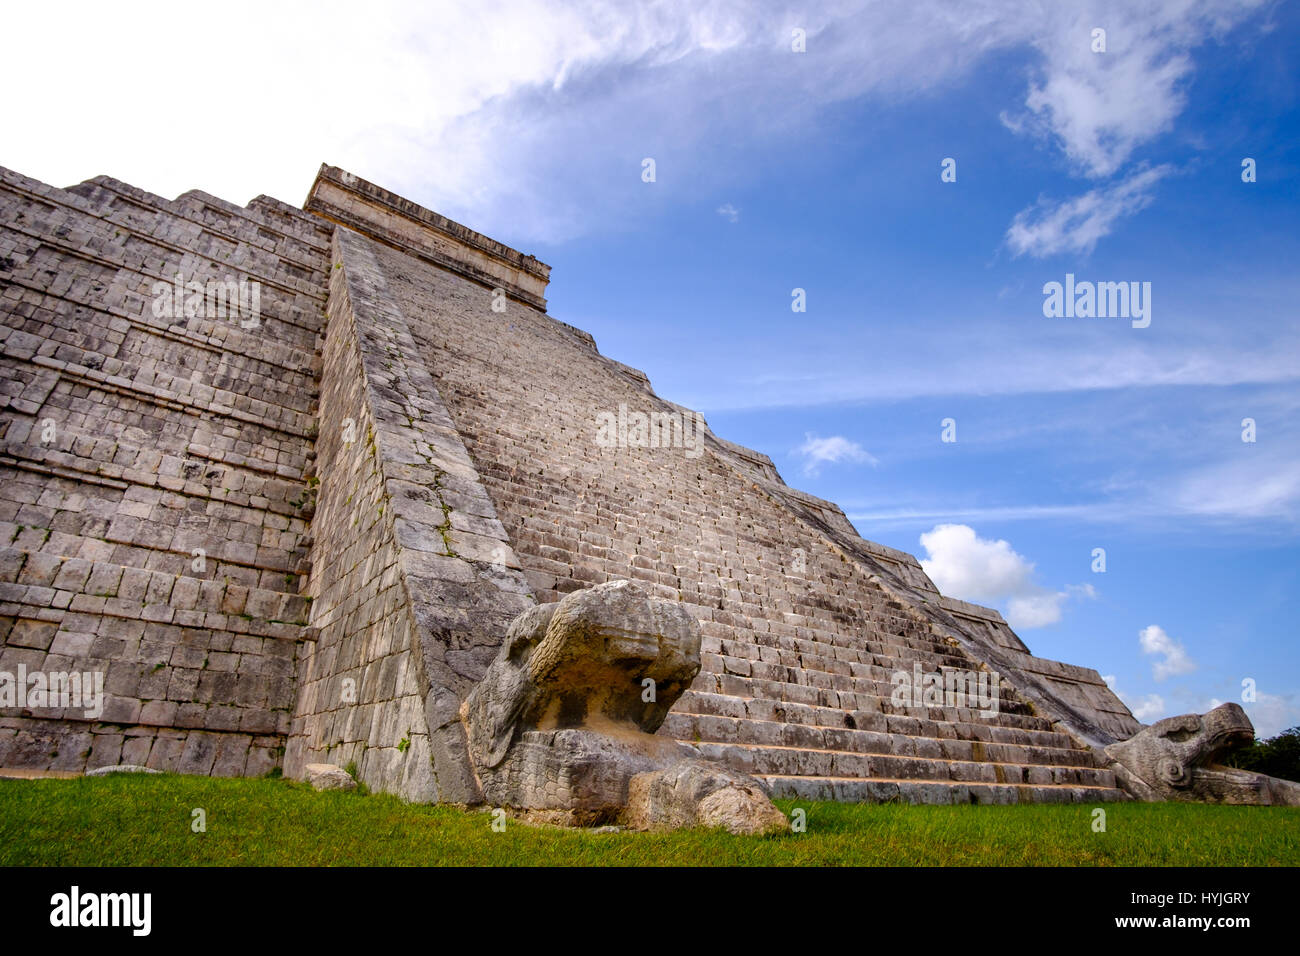 La famosa pirámide Maya en Chichen Itza con escaleras de piedra, México Foto de stock